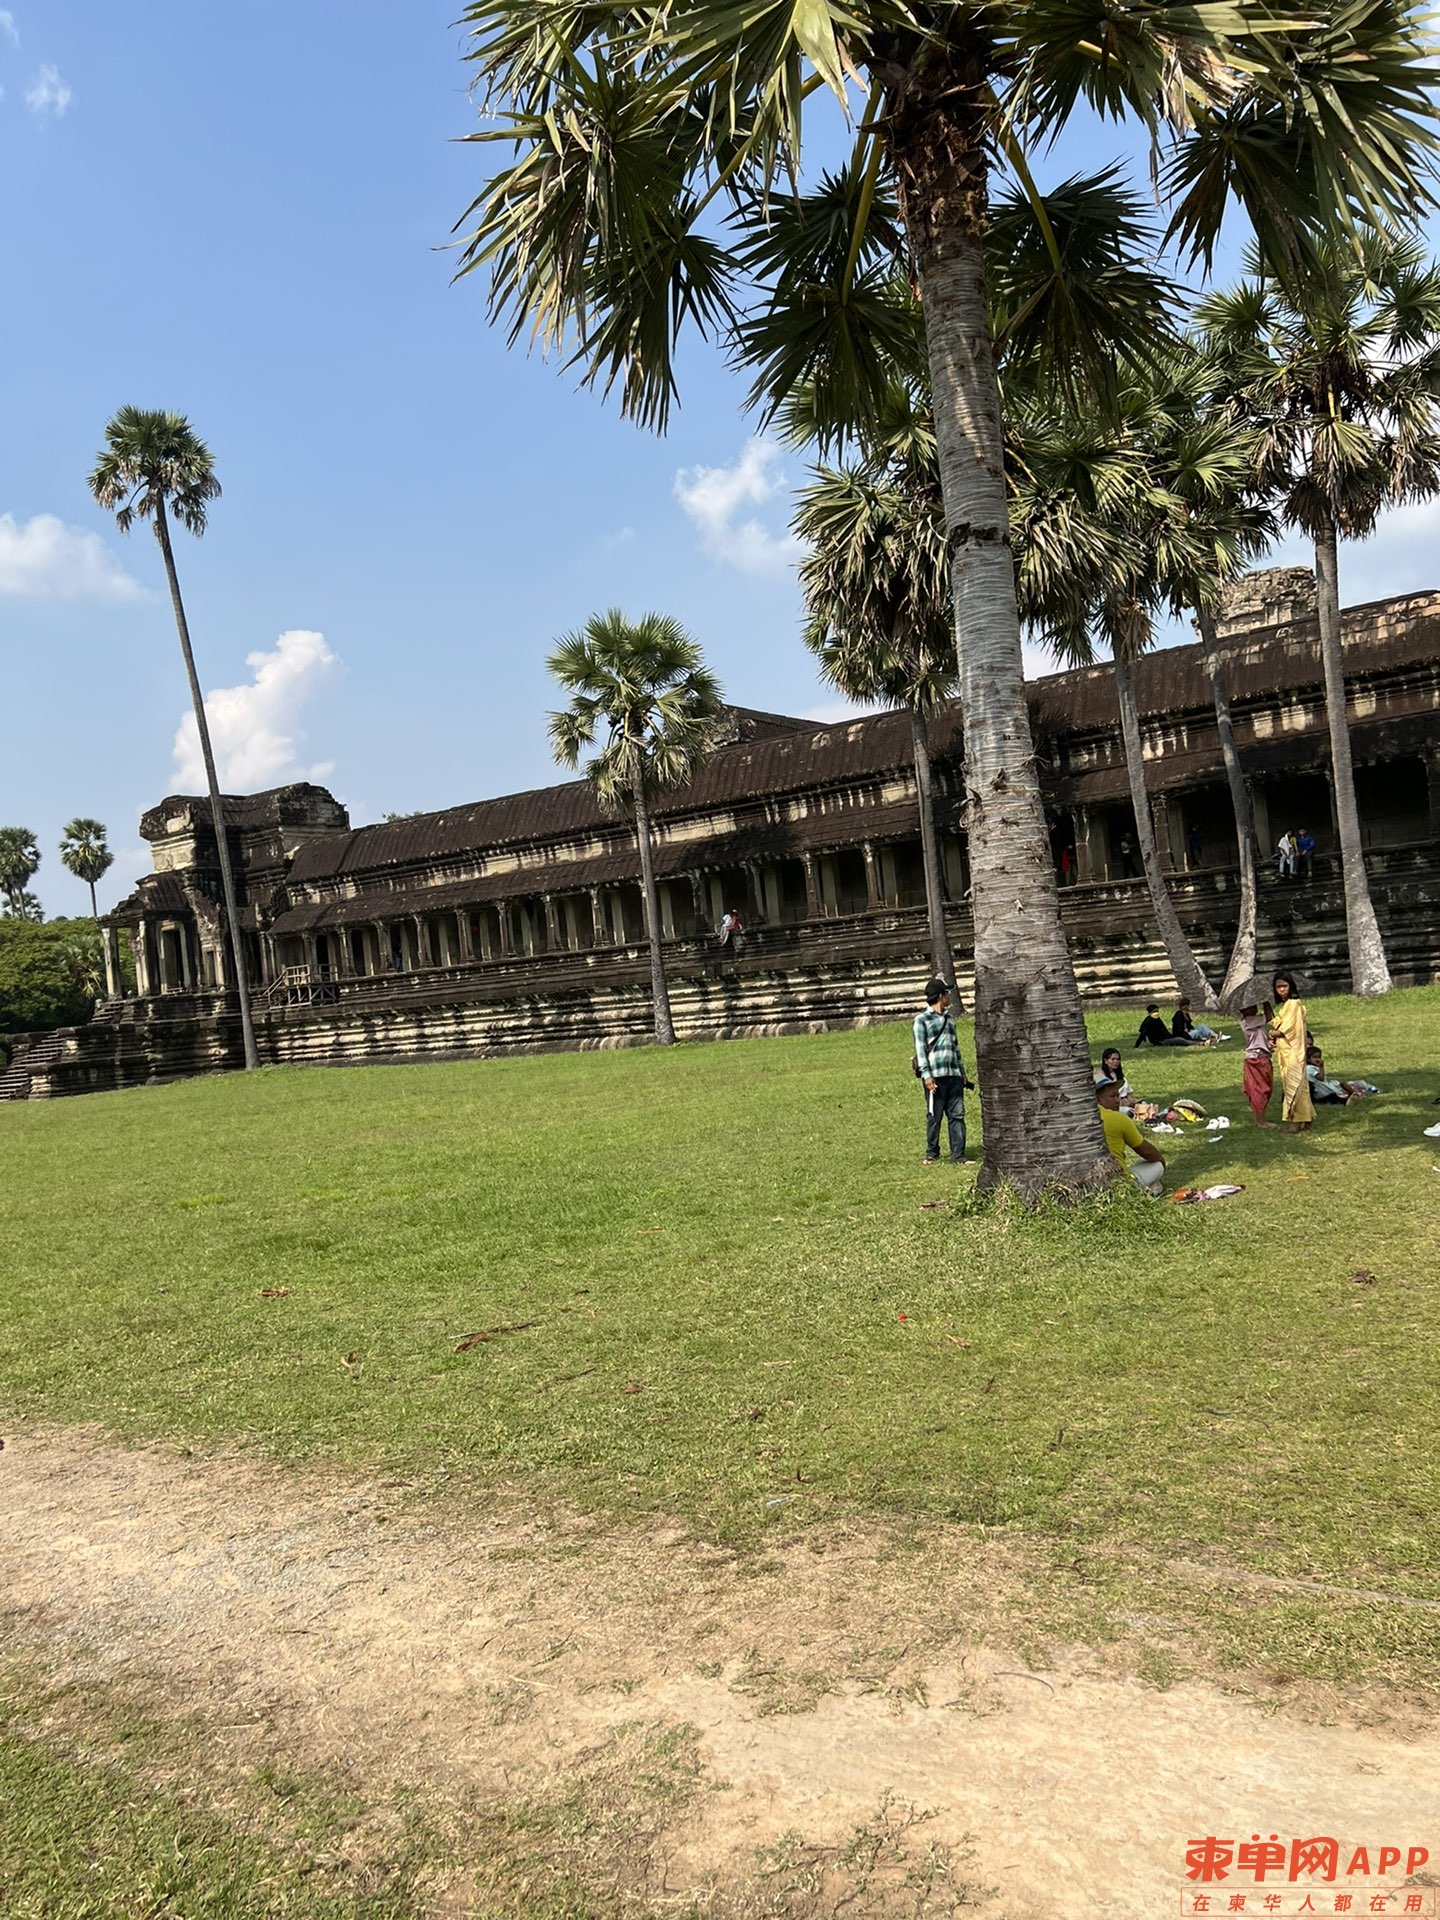 请问疫情结束可以正常来柬埔寨旅游或探亲吗？